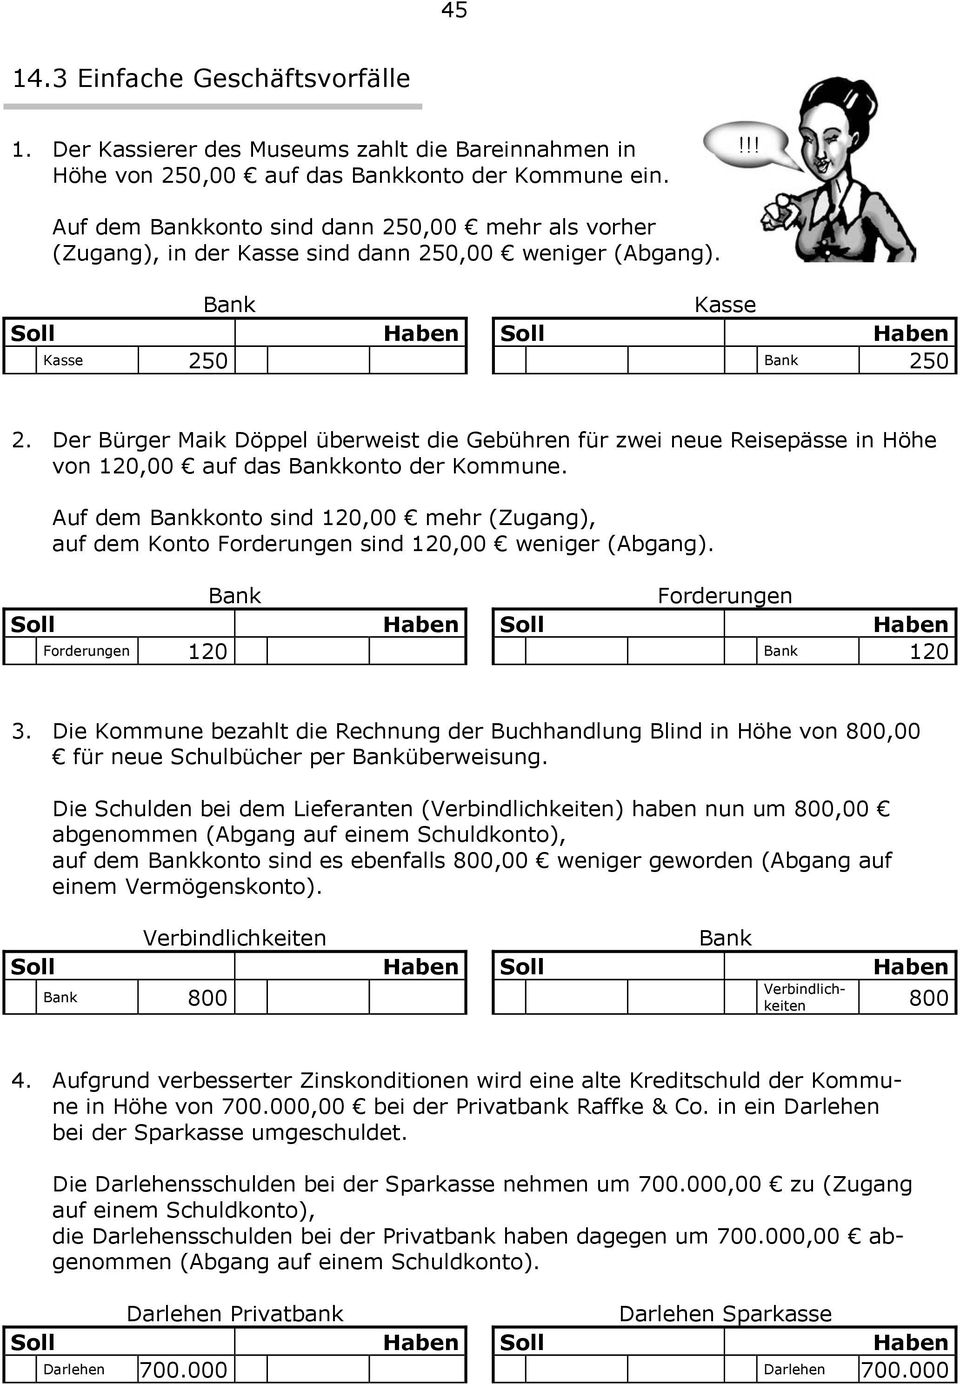 Der Bürger Maik Döppel überweist die Gebühren für zwei neue Reisepässe in Höhe von 120,00 auf das Bankkonto der Kommune.